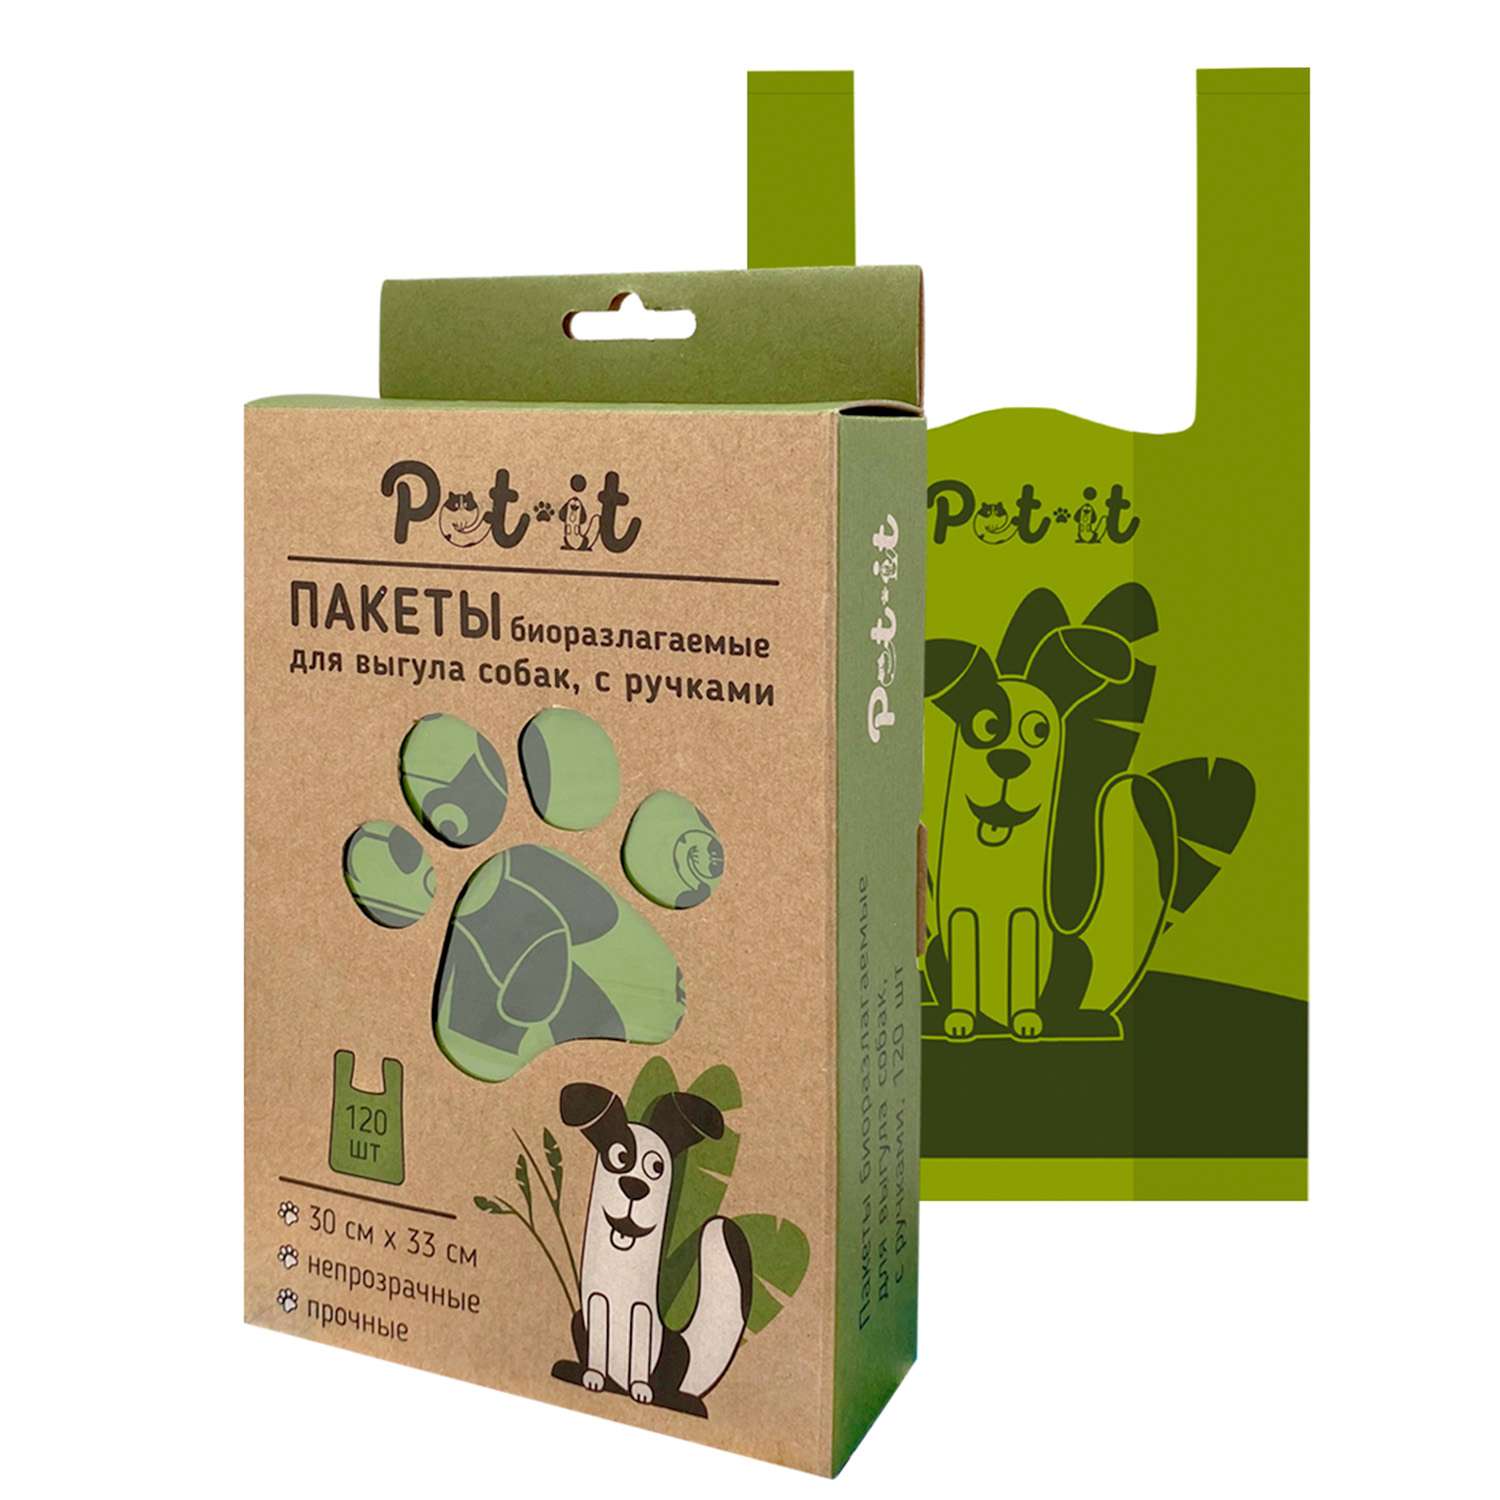 Пакеты Pet-it биоразлагаемые для выгула собак 30х33 с ручками упаковка 120 шт - фото 1